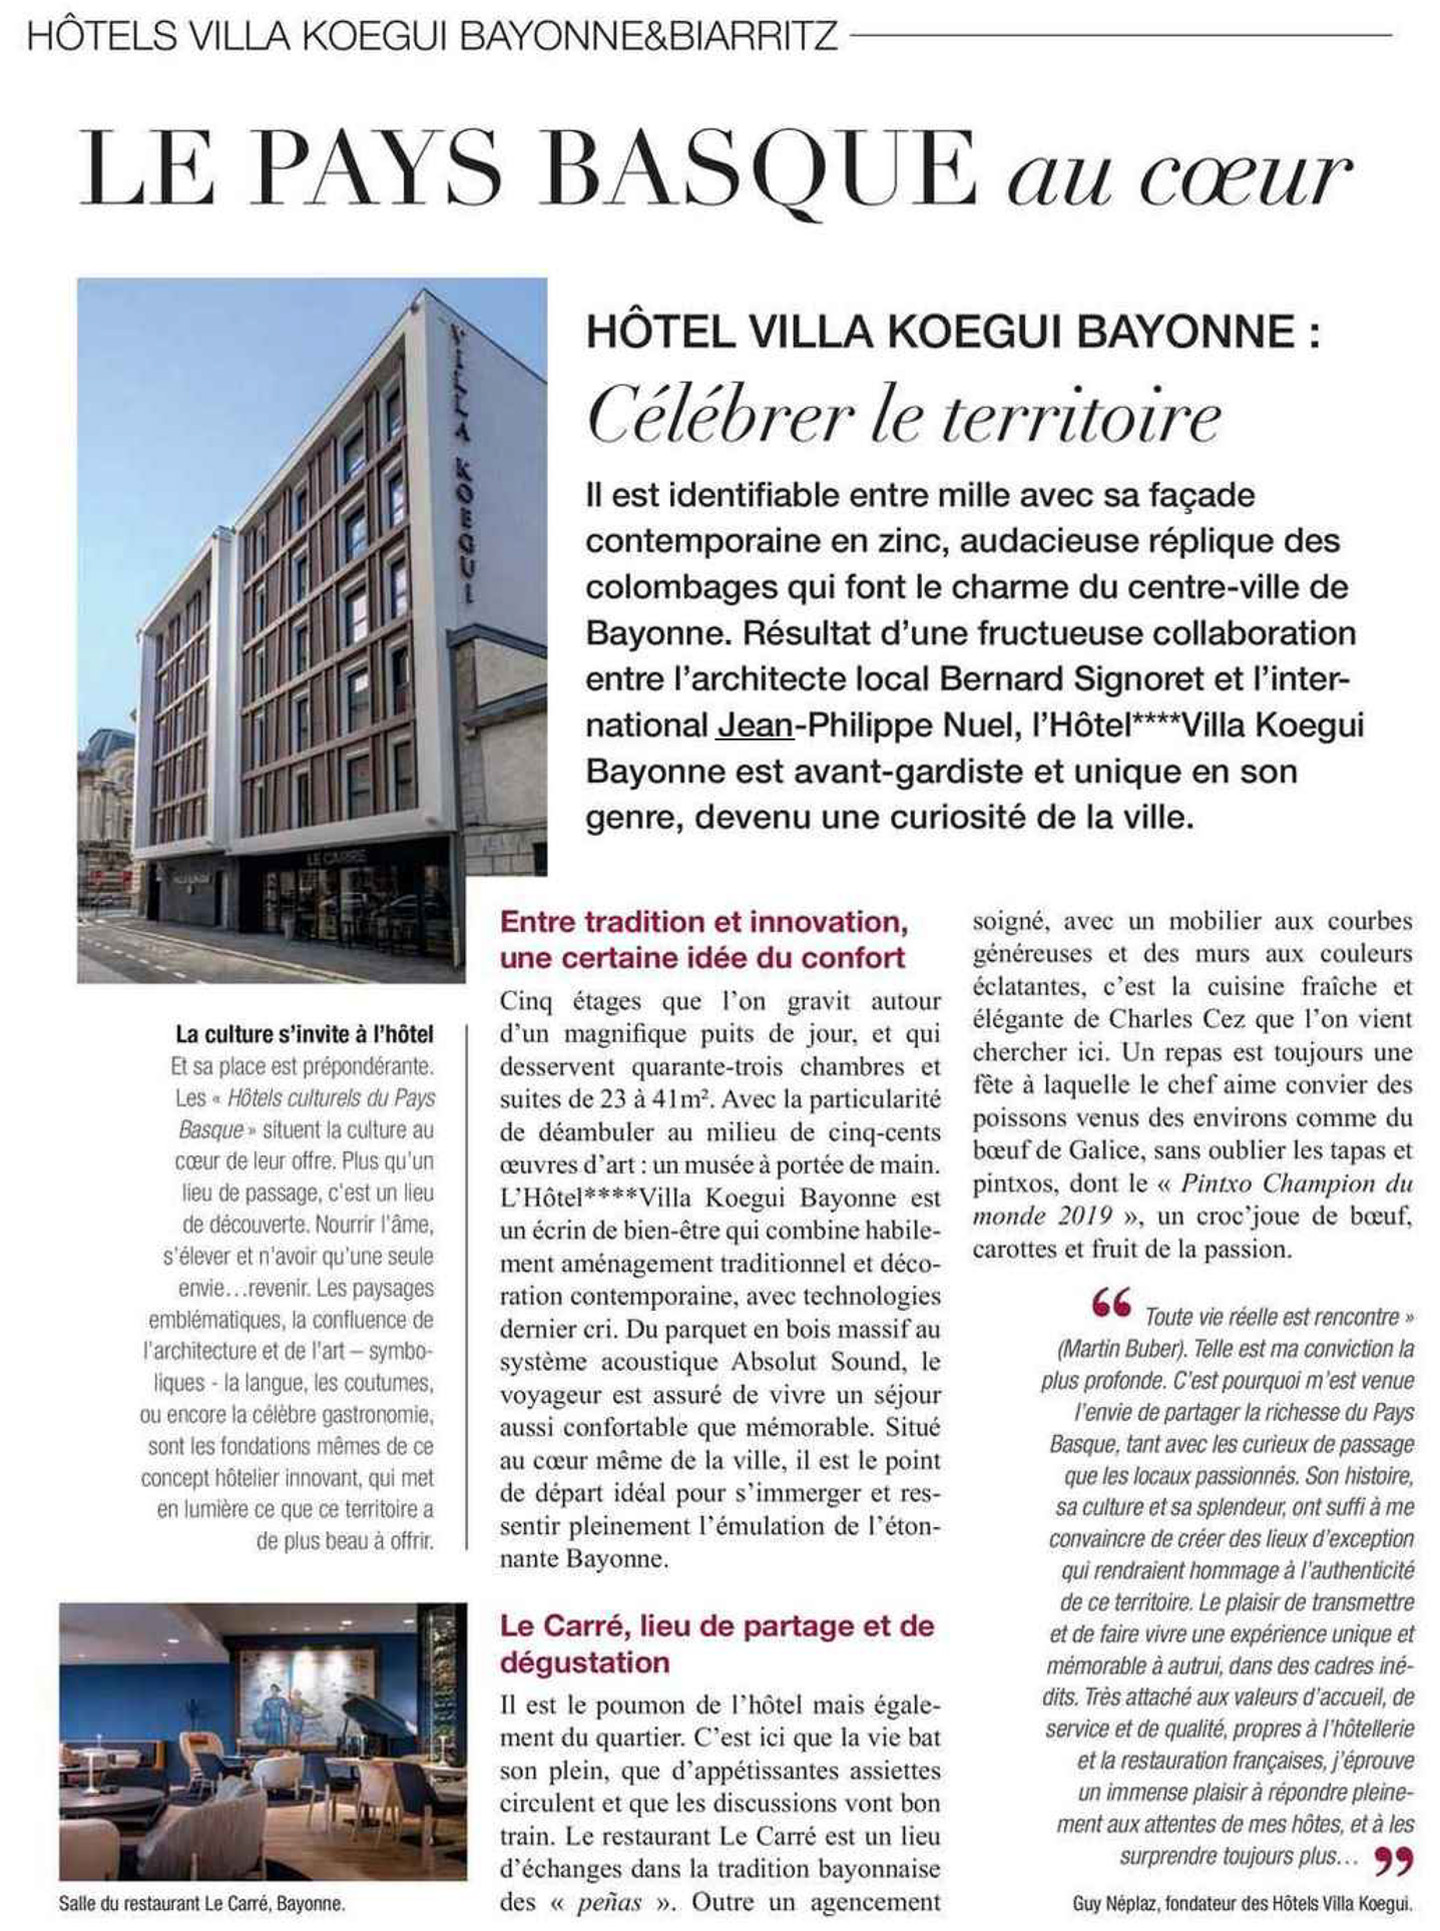 Article sur la villa koegui bayonne dans le figaro magazine aquitaine, hotel lifestyle dans le pays basque français réalisé par le studio d'architecture d'intérieur jean-philippe nuel